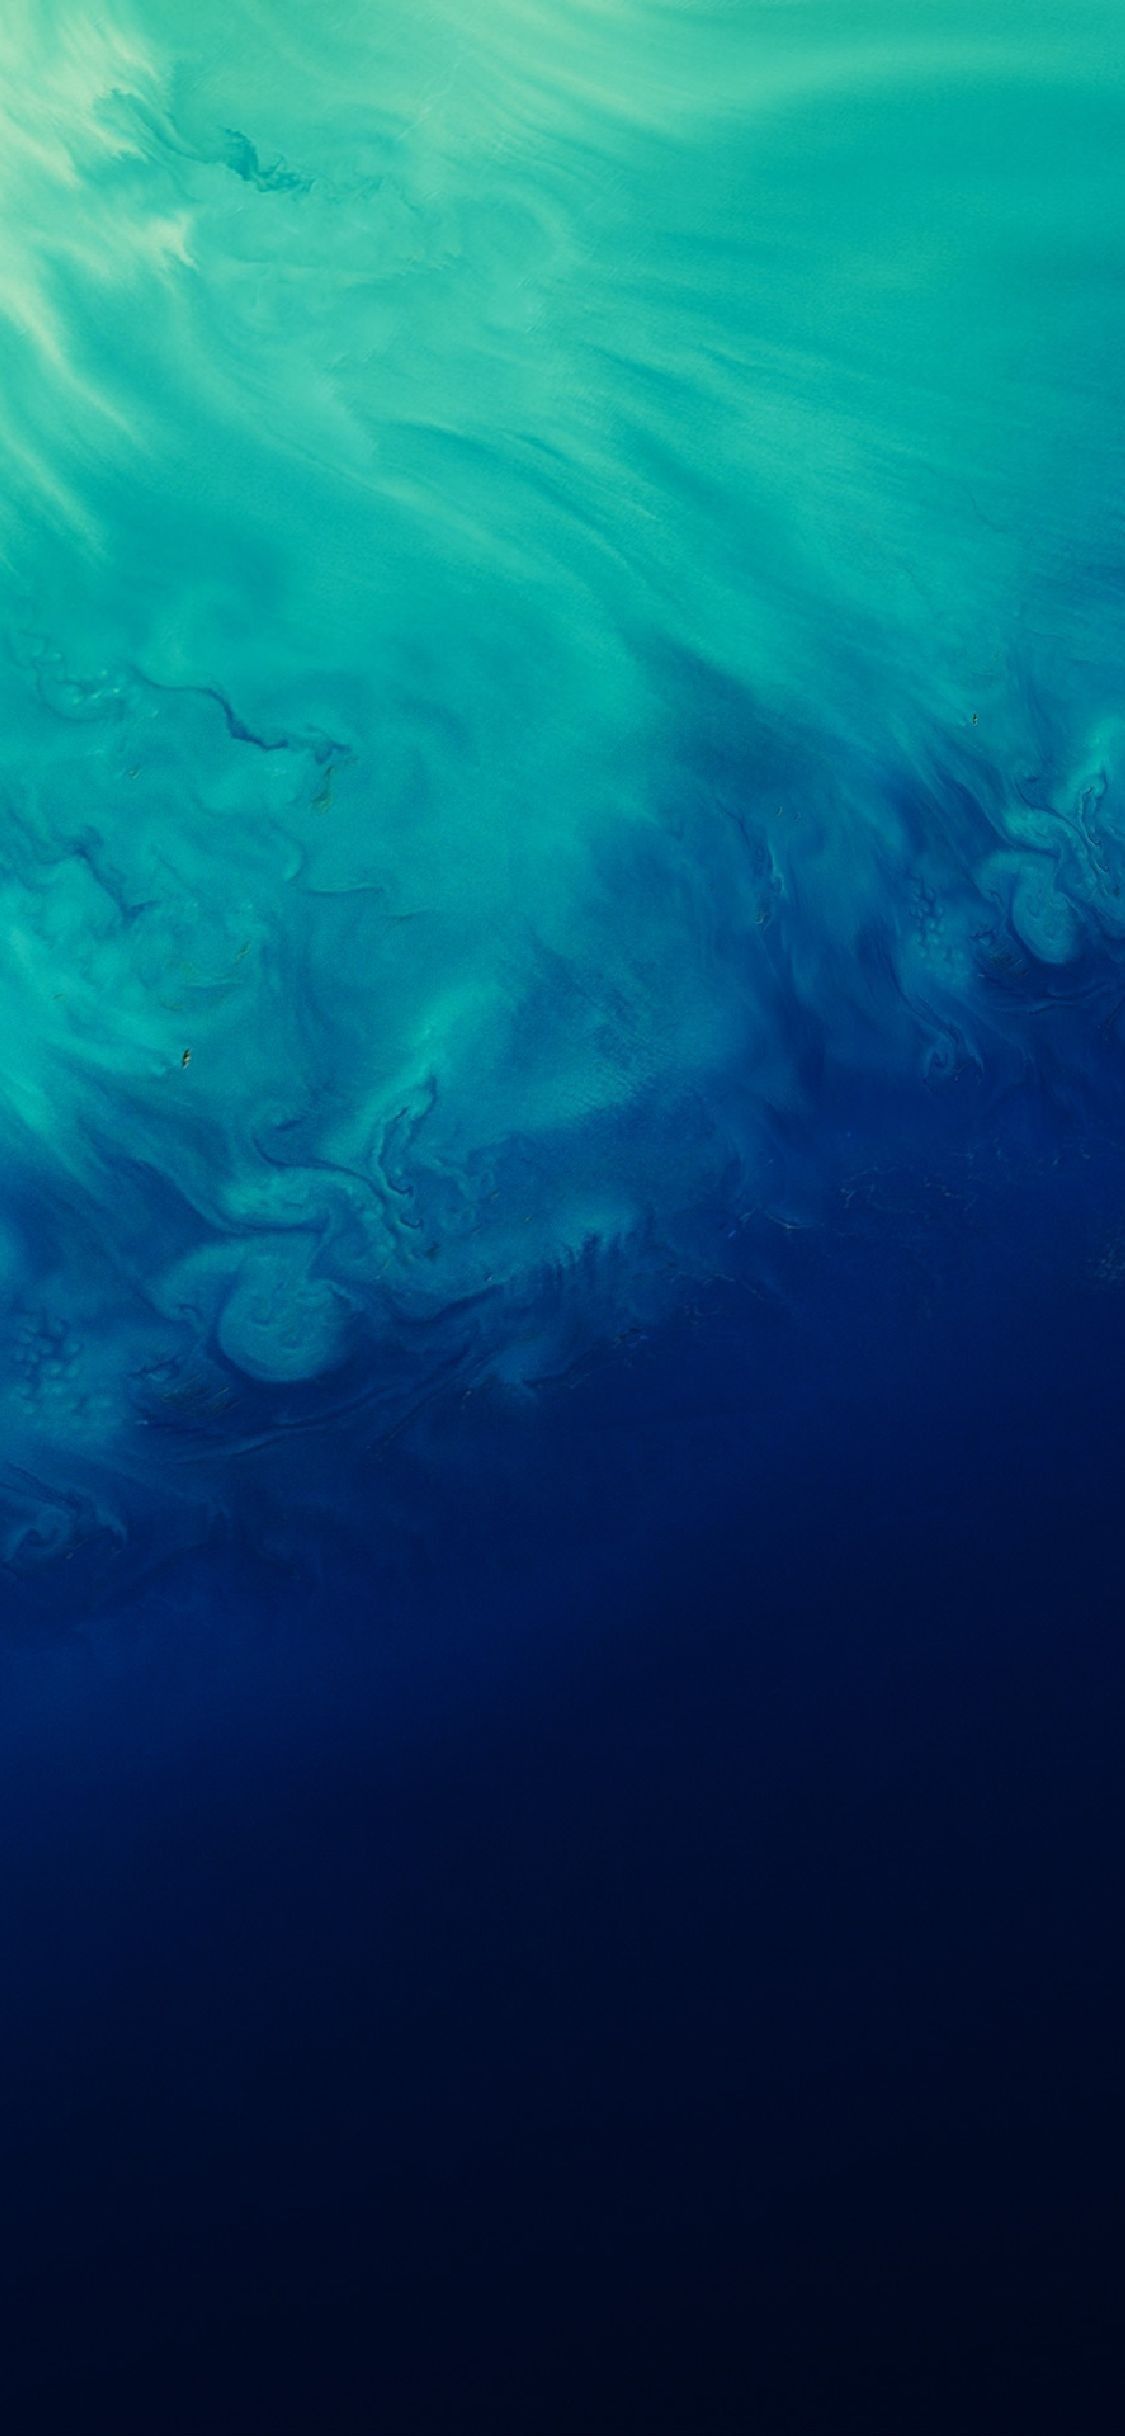 Underwater iPhone Wallpapers - Wallpaper Cave